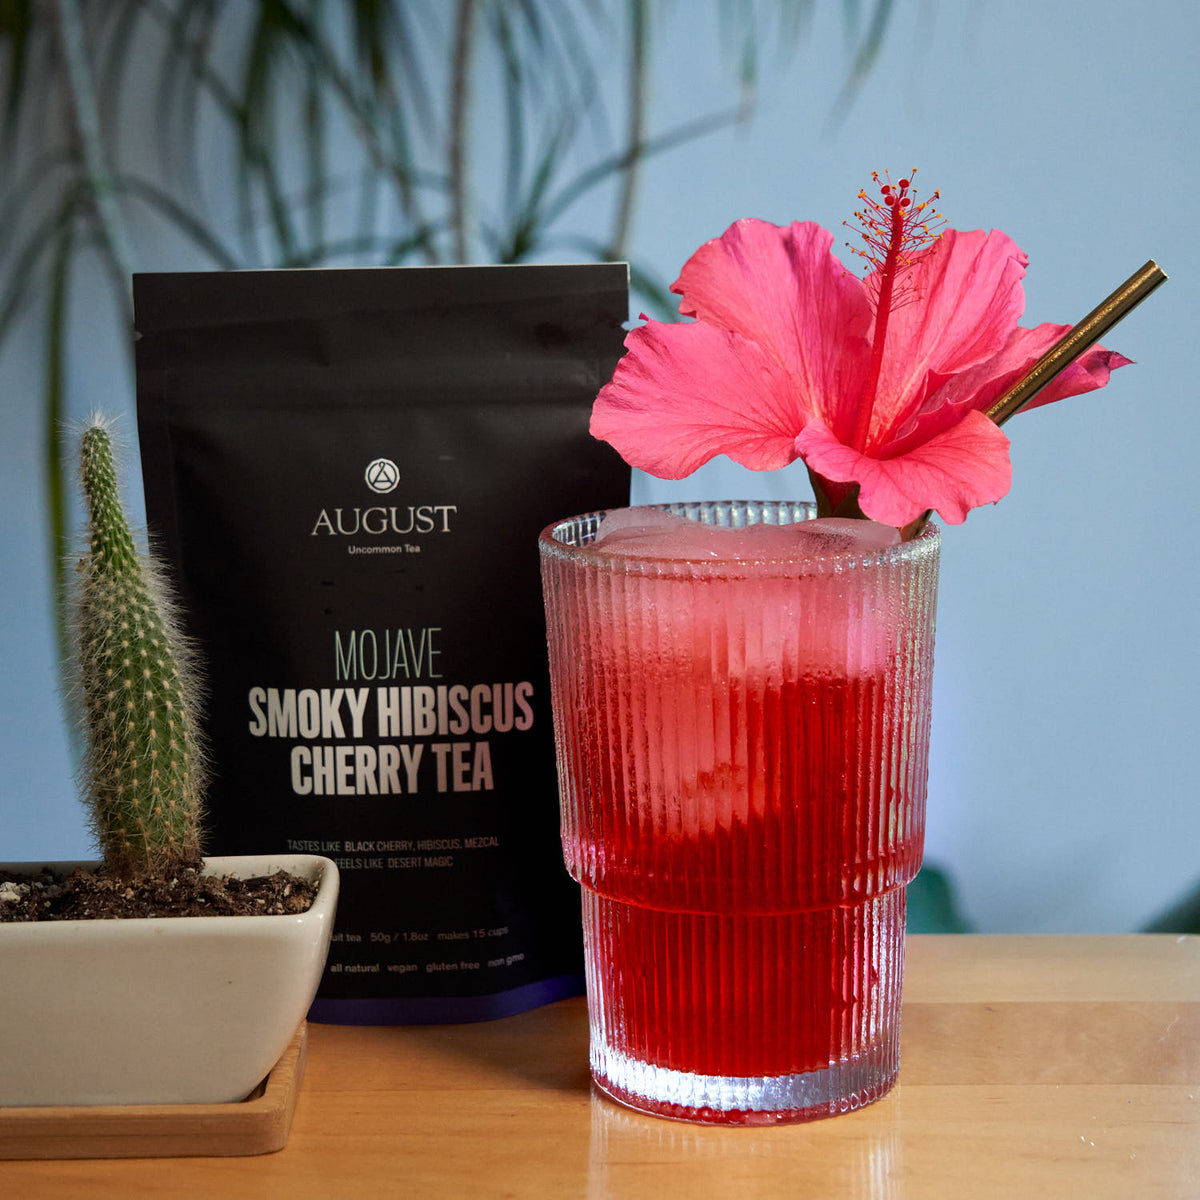 Mojave: Smoky Hibiscus Cherry Tea (Very Low Caffeine)